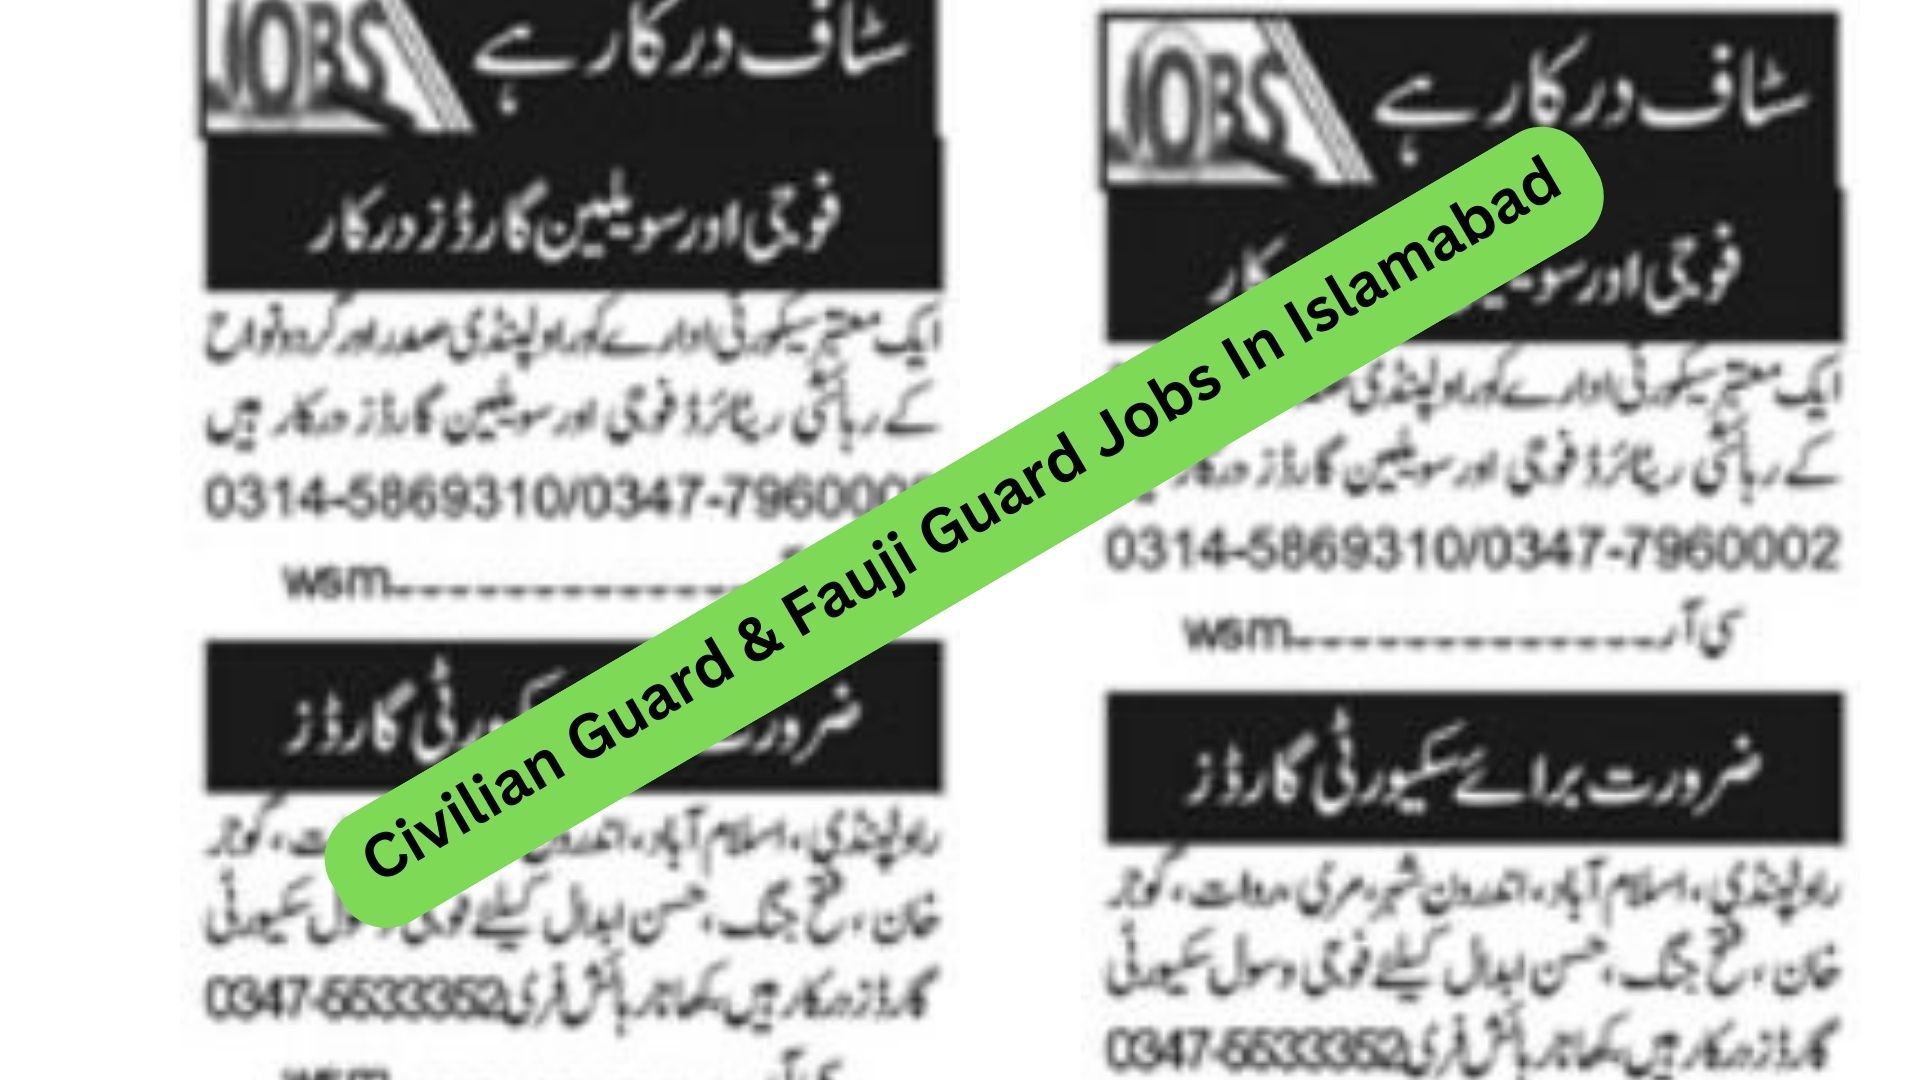 Civilian Guard & Fauji Guard Jobs In Islamabad